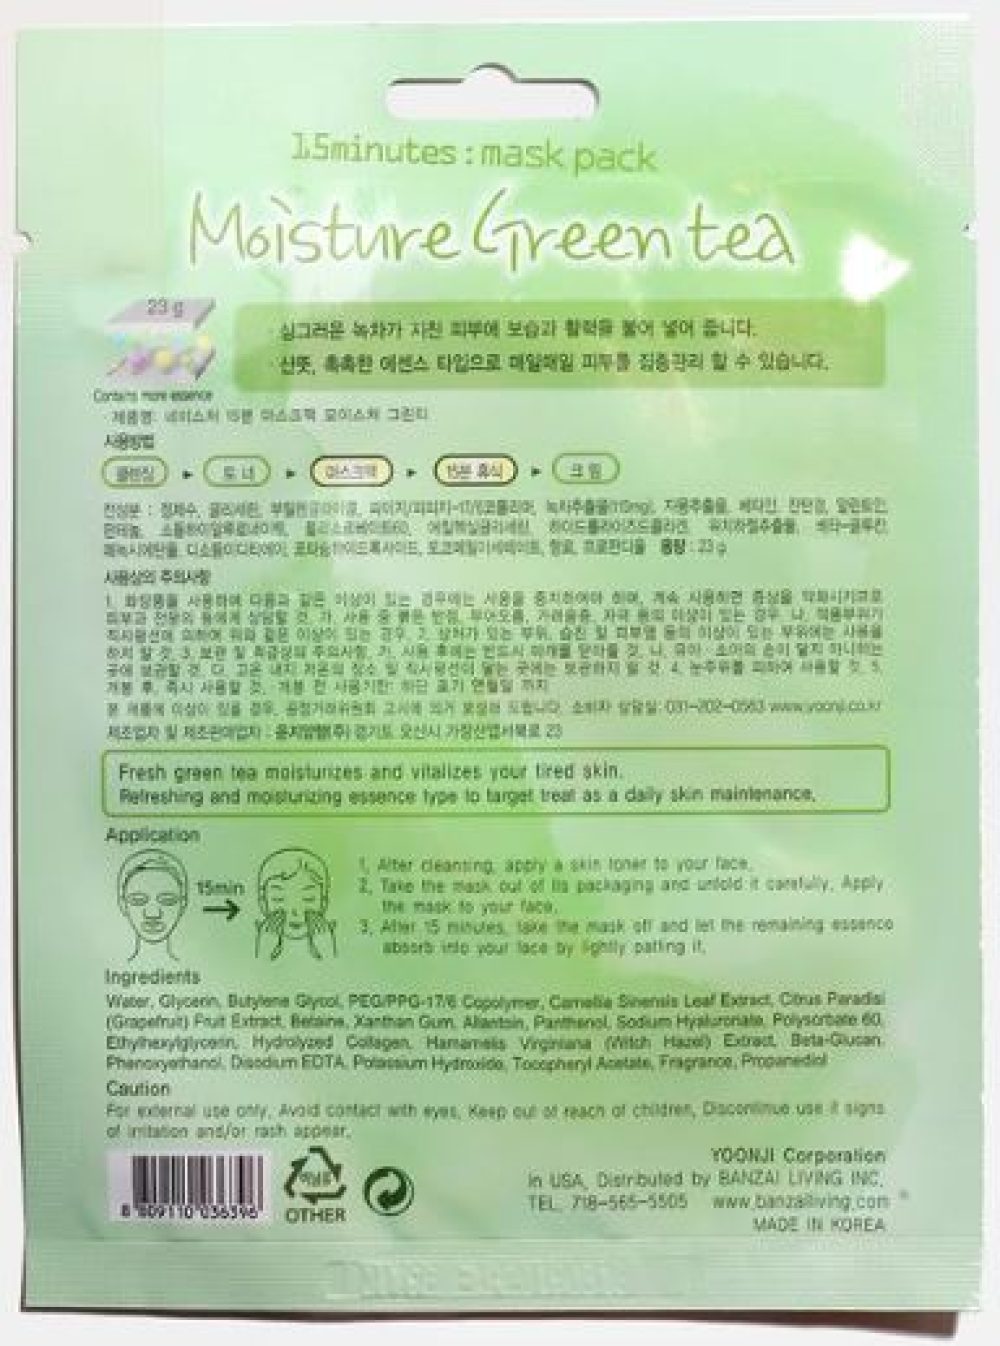 moisture green tea